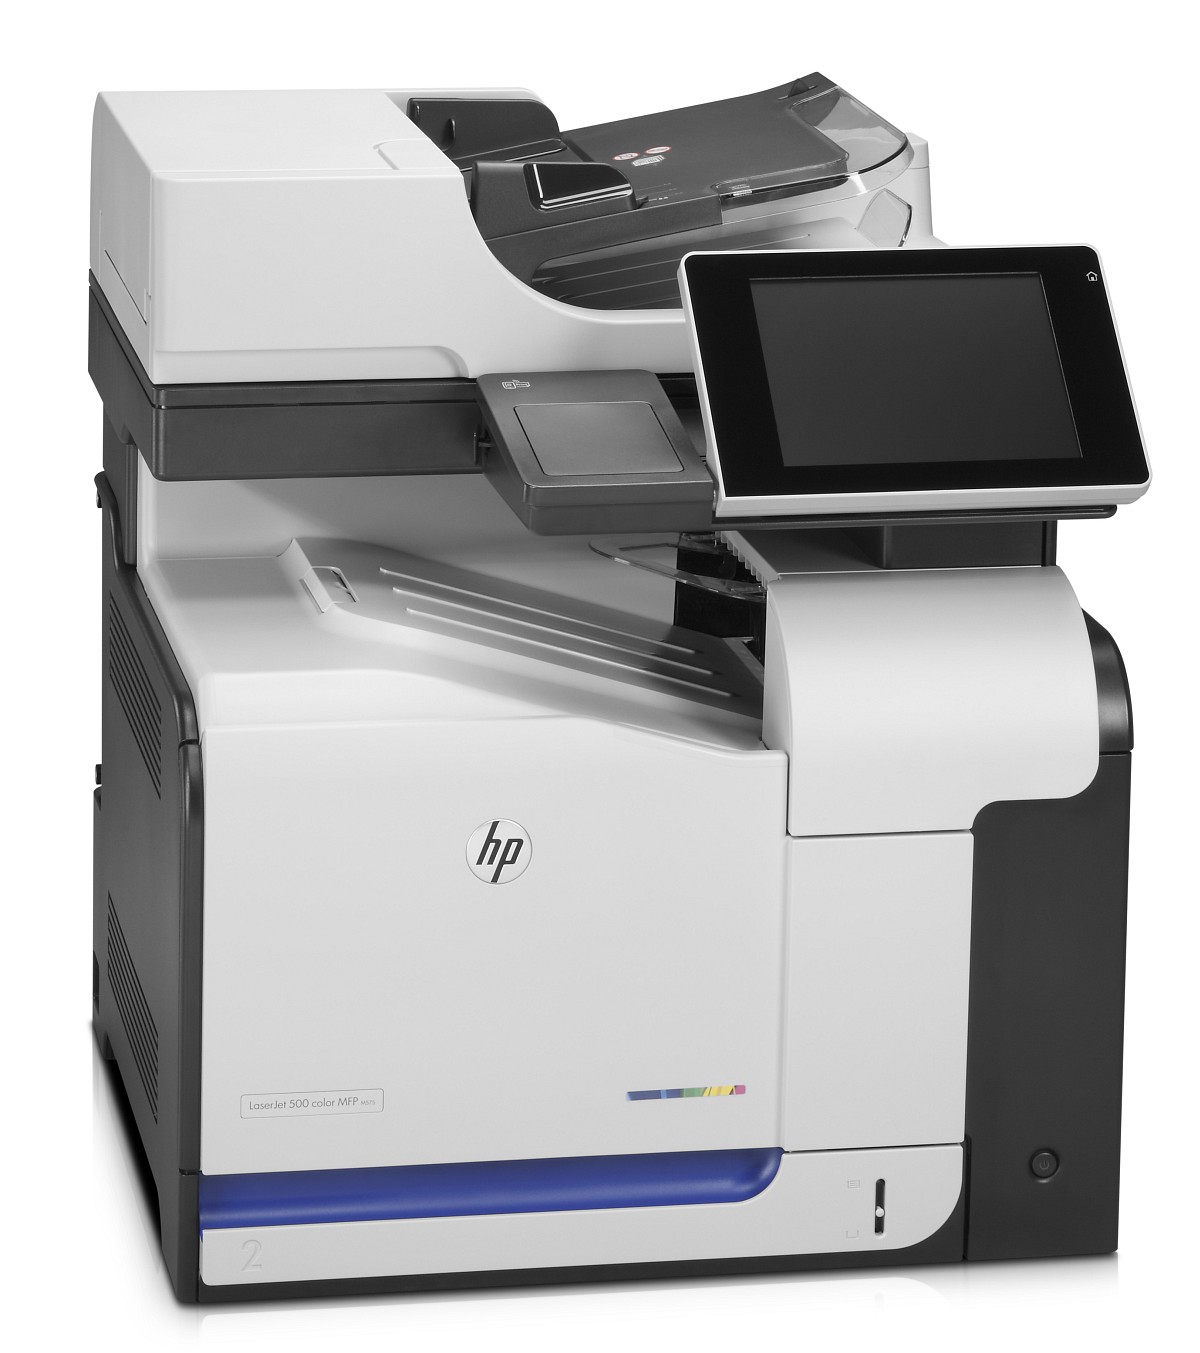 HP LaserJet Enterprise 500 Color MFP M575dn (CD644A)